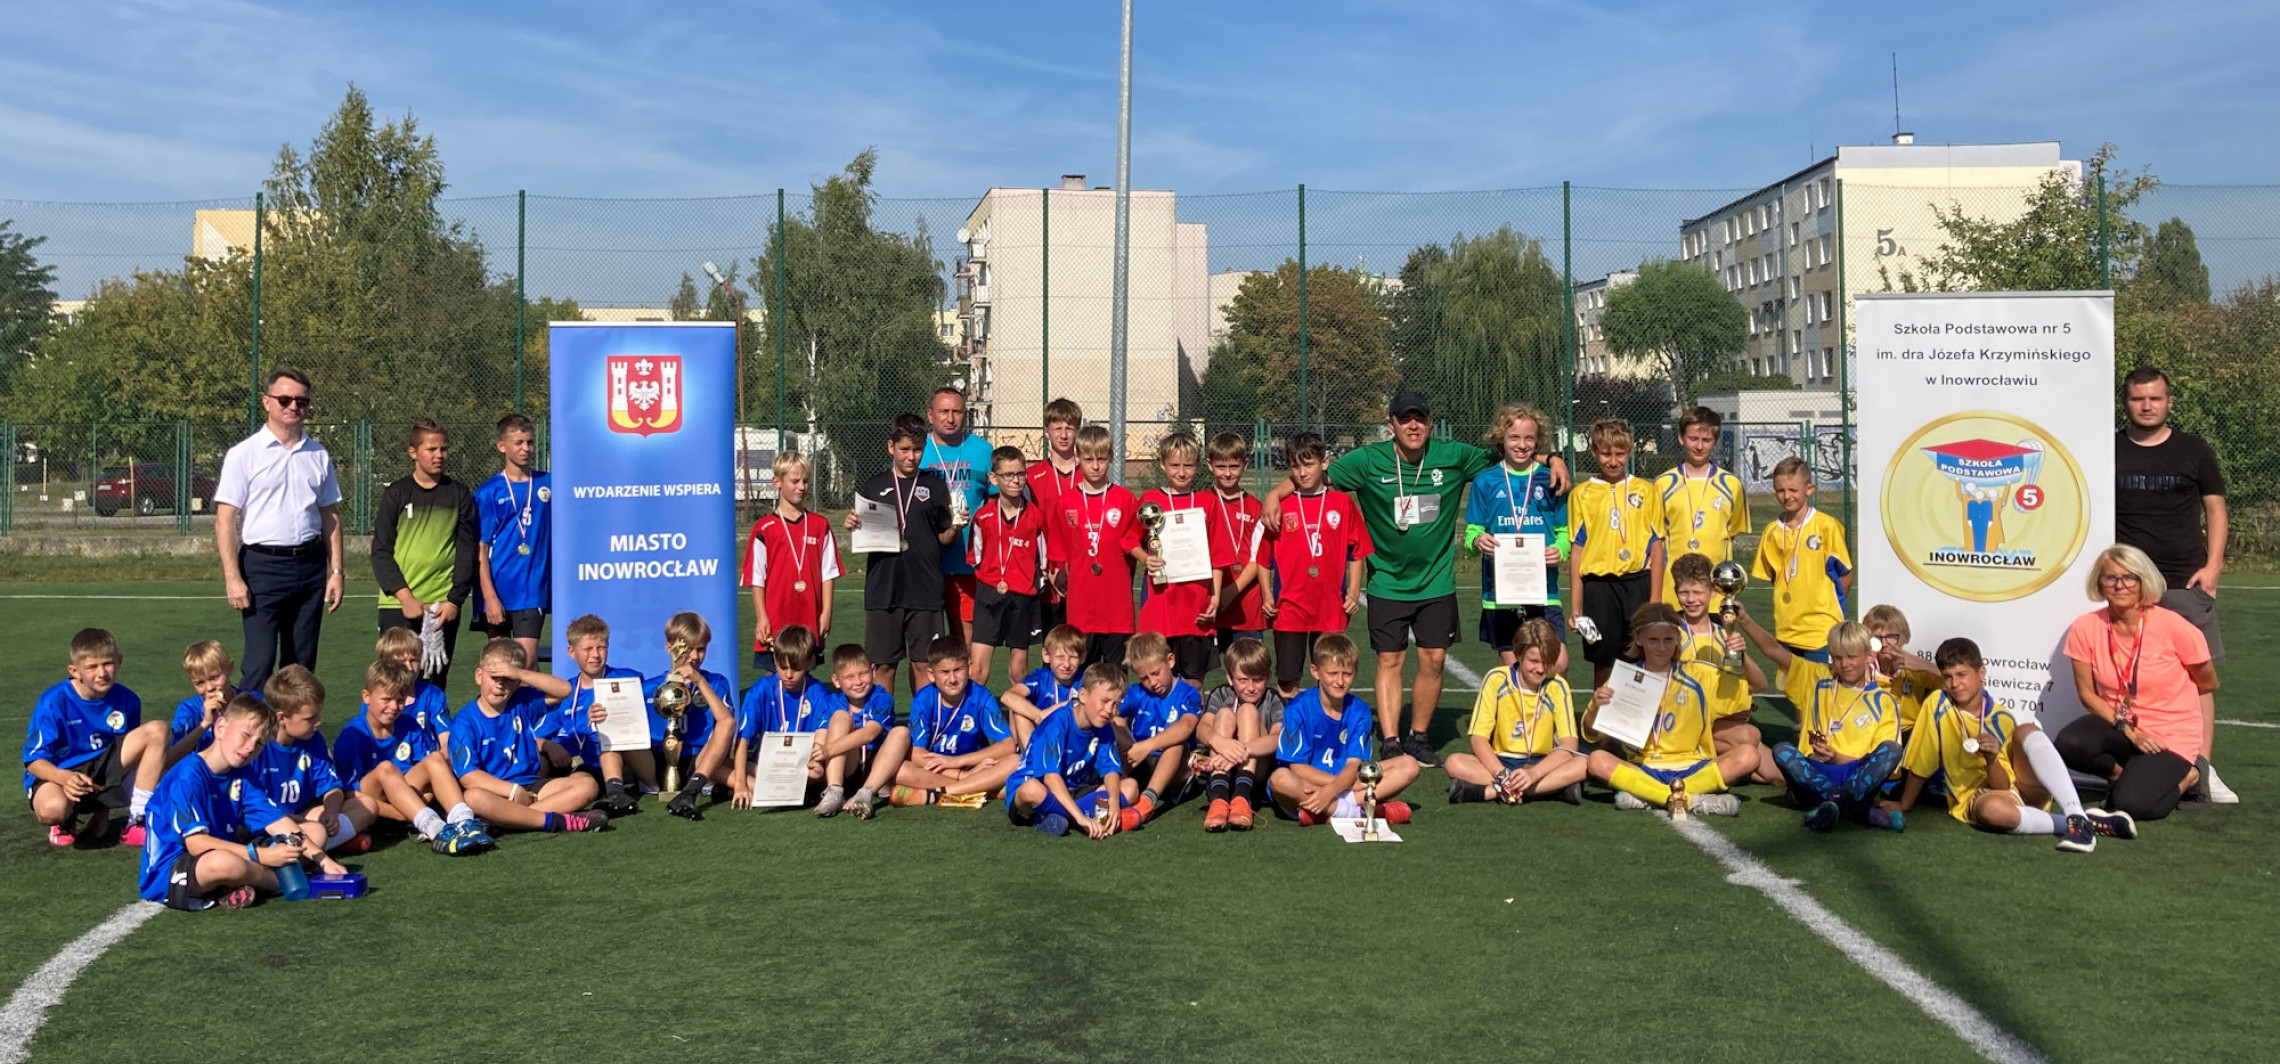 Inowrocław - Piłkarski turniej na Rąbinie z okazji jubileuszu szkoły